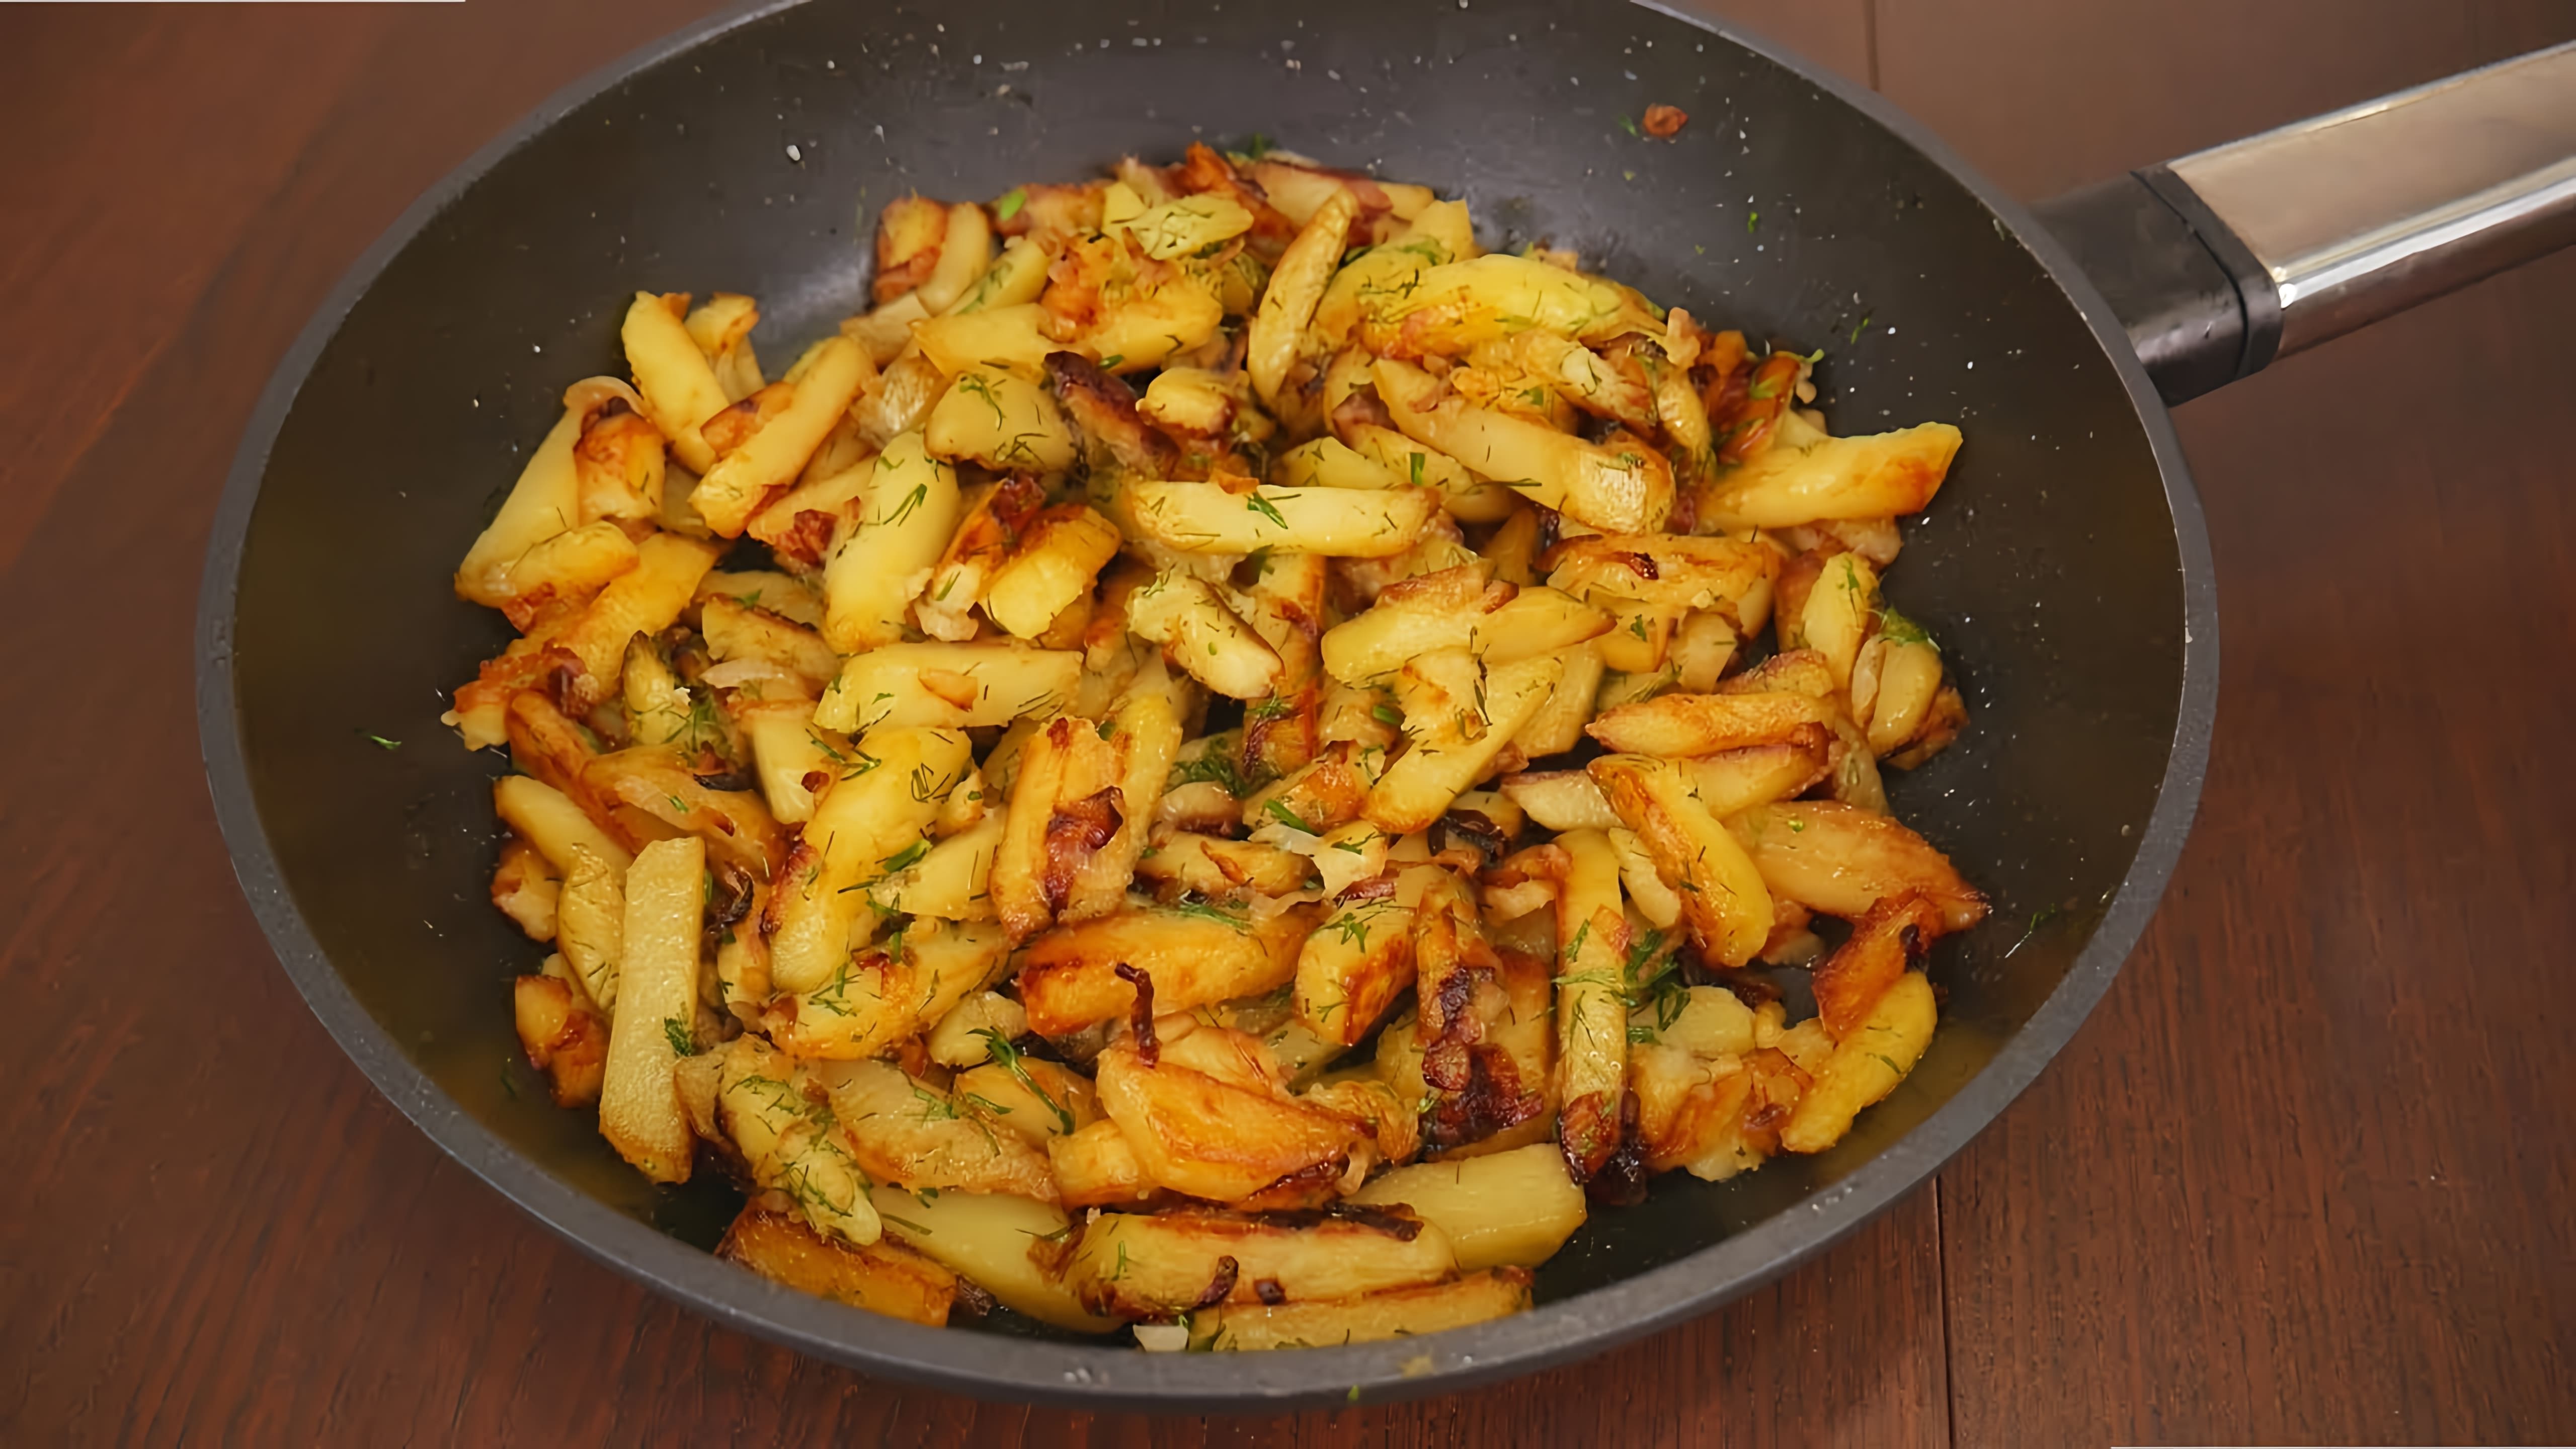 В этом видео демонстрируется рецепт приготовления жареной картошки